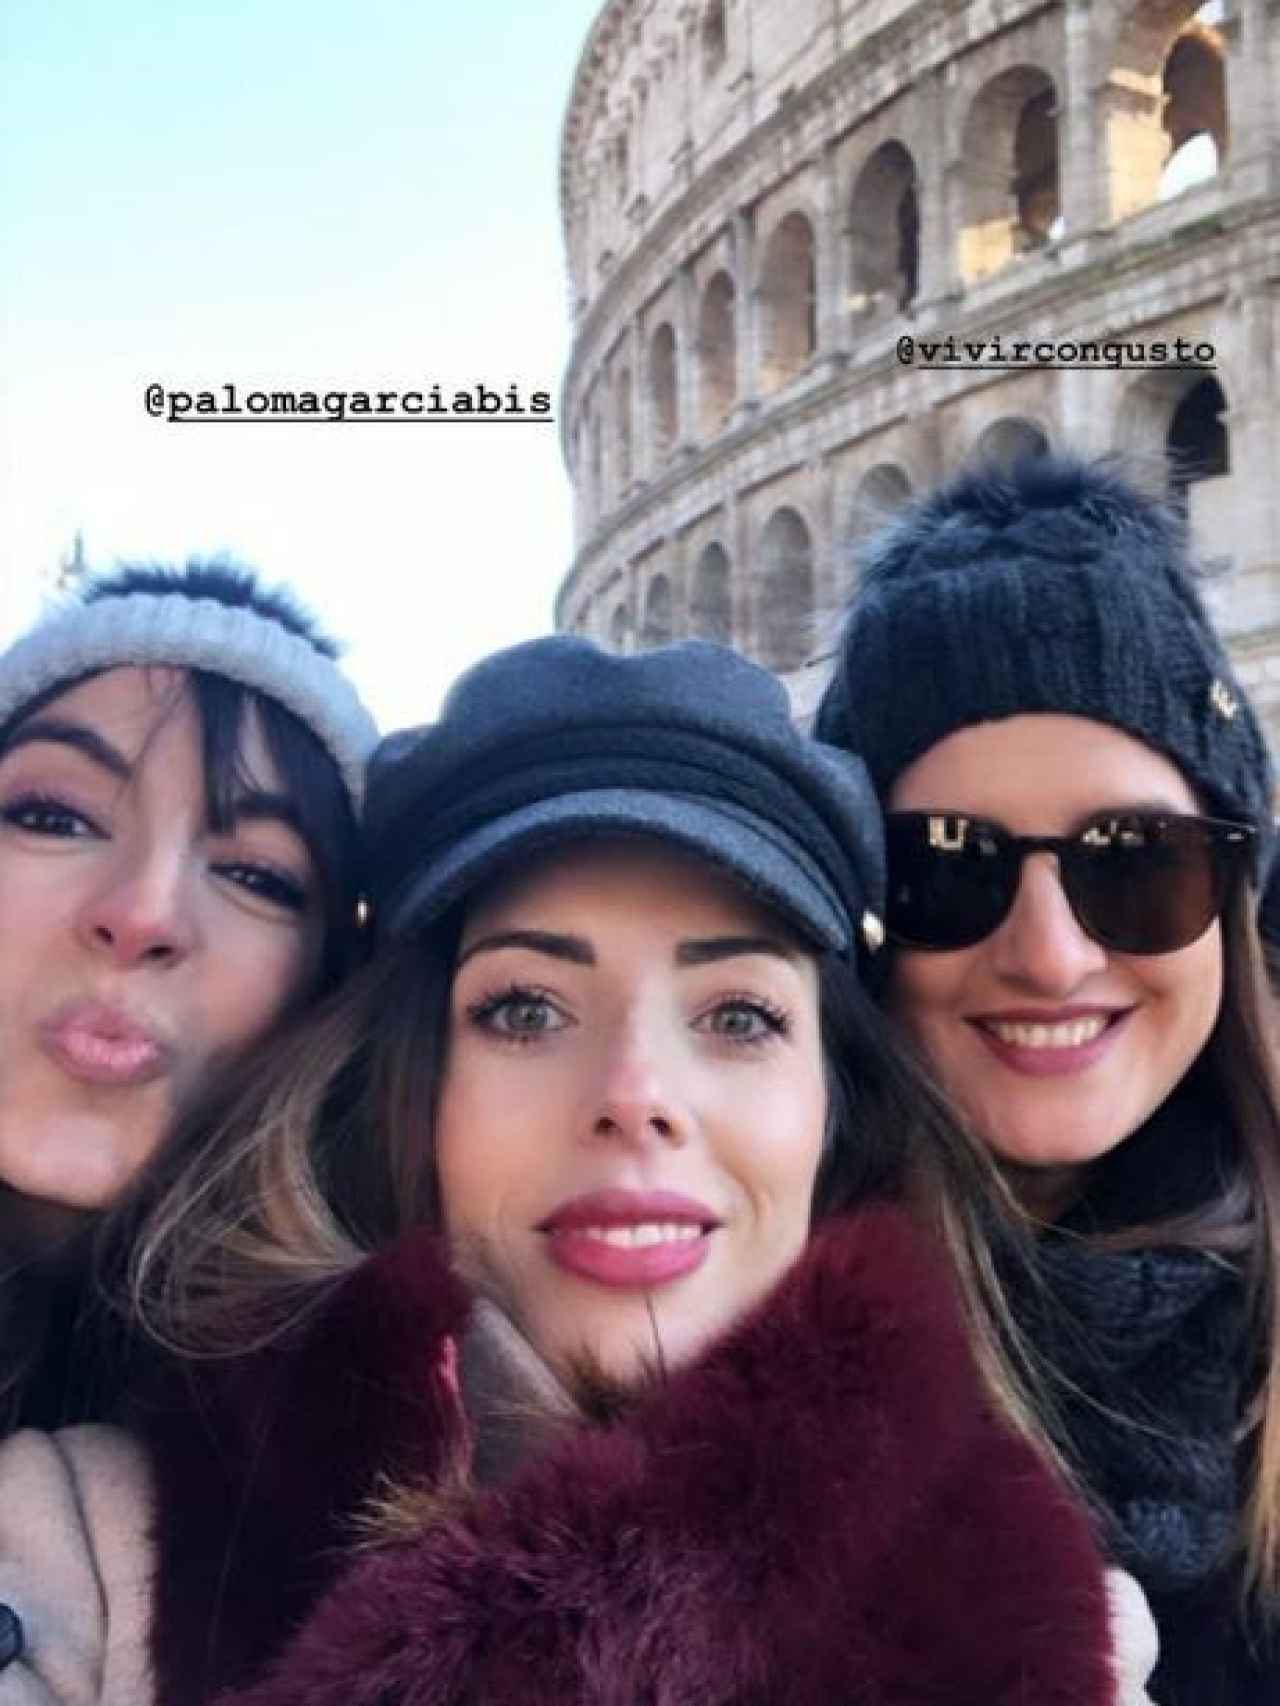 Lidia Bedman, en el centro, junto a dos amigas en el Coliseo.